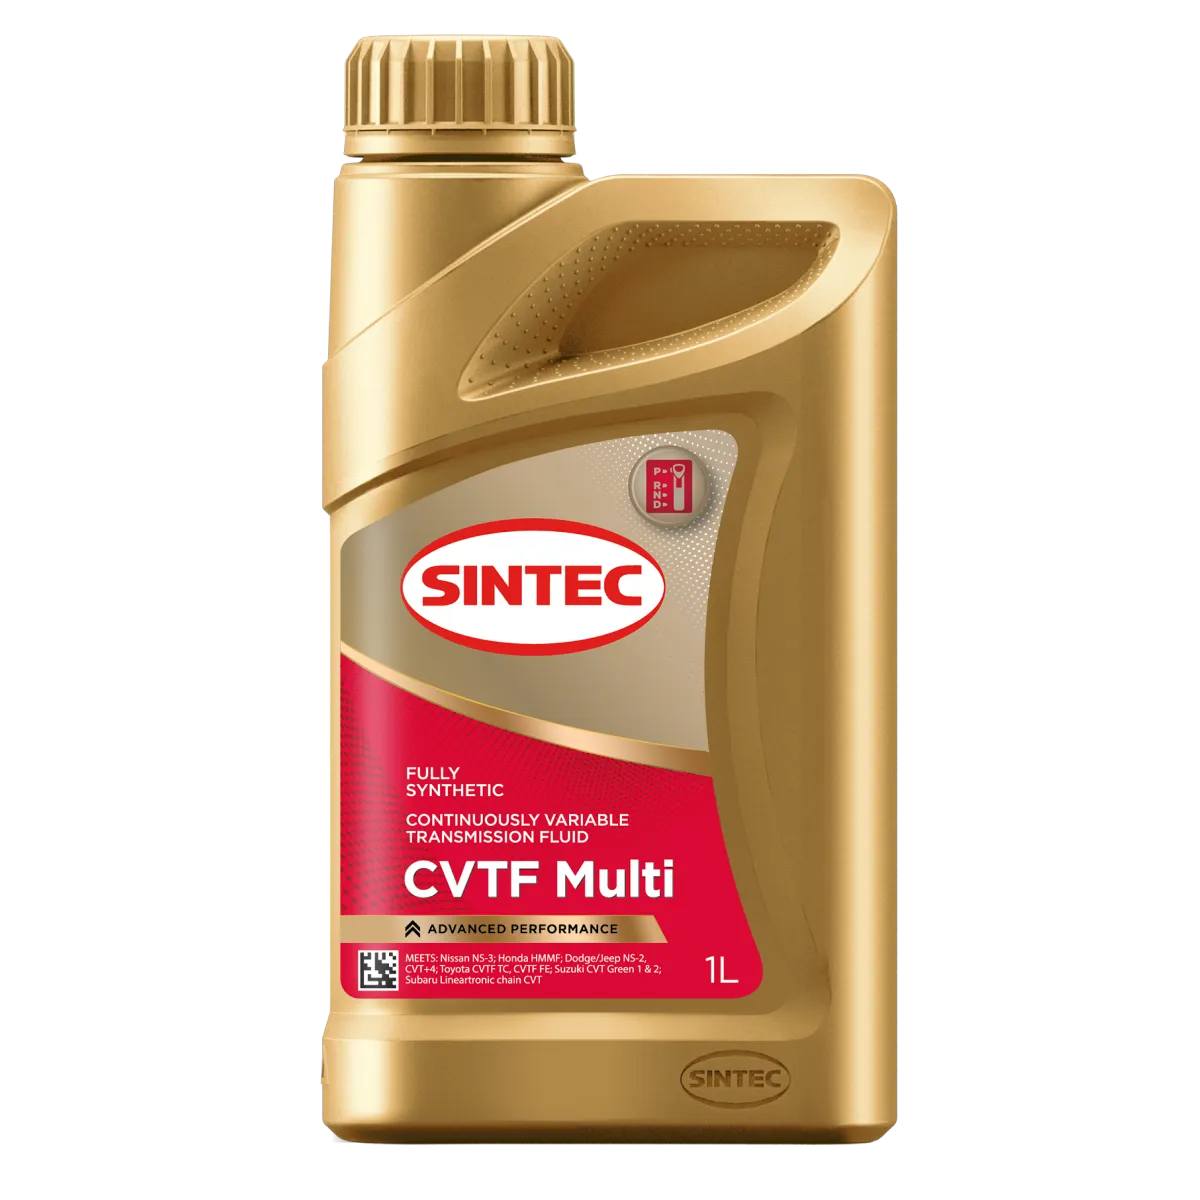 Sintec CVTF Multi Трансмиссионные масла: описание, применение, свойства, где
							купить